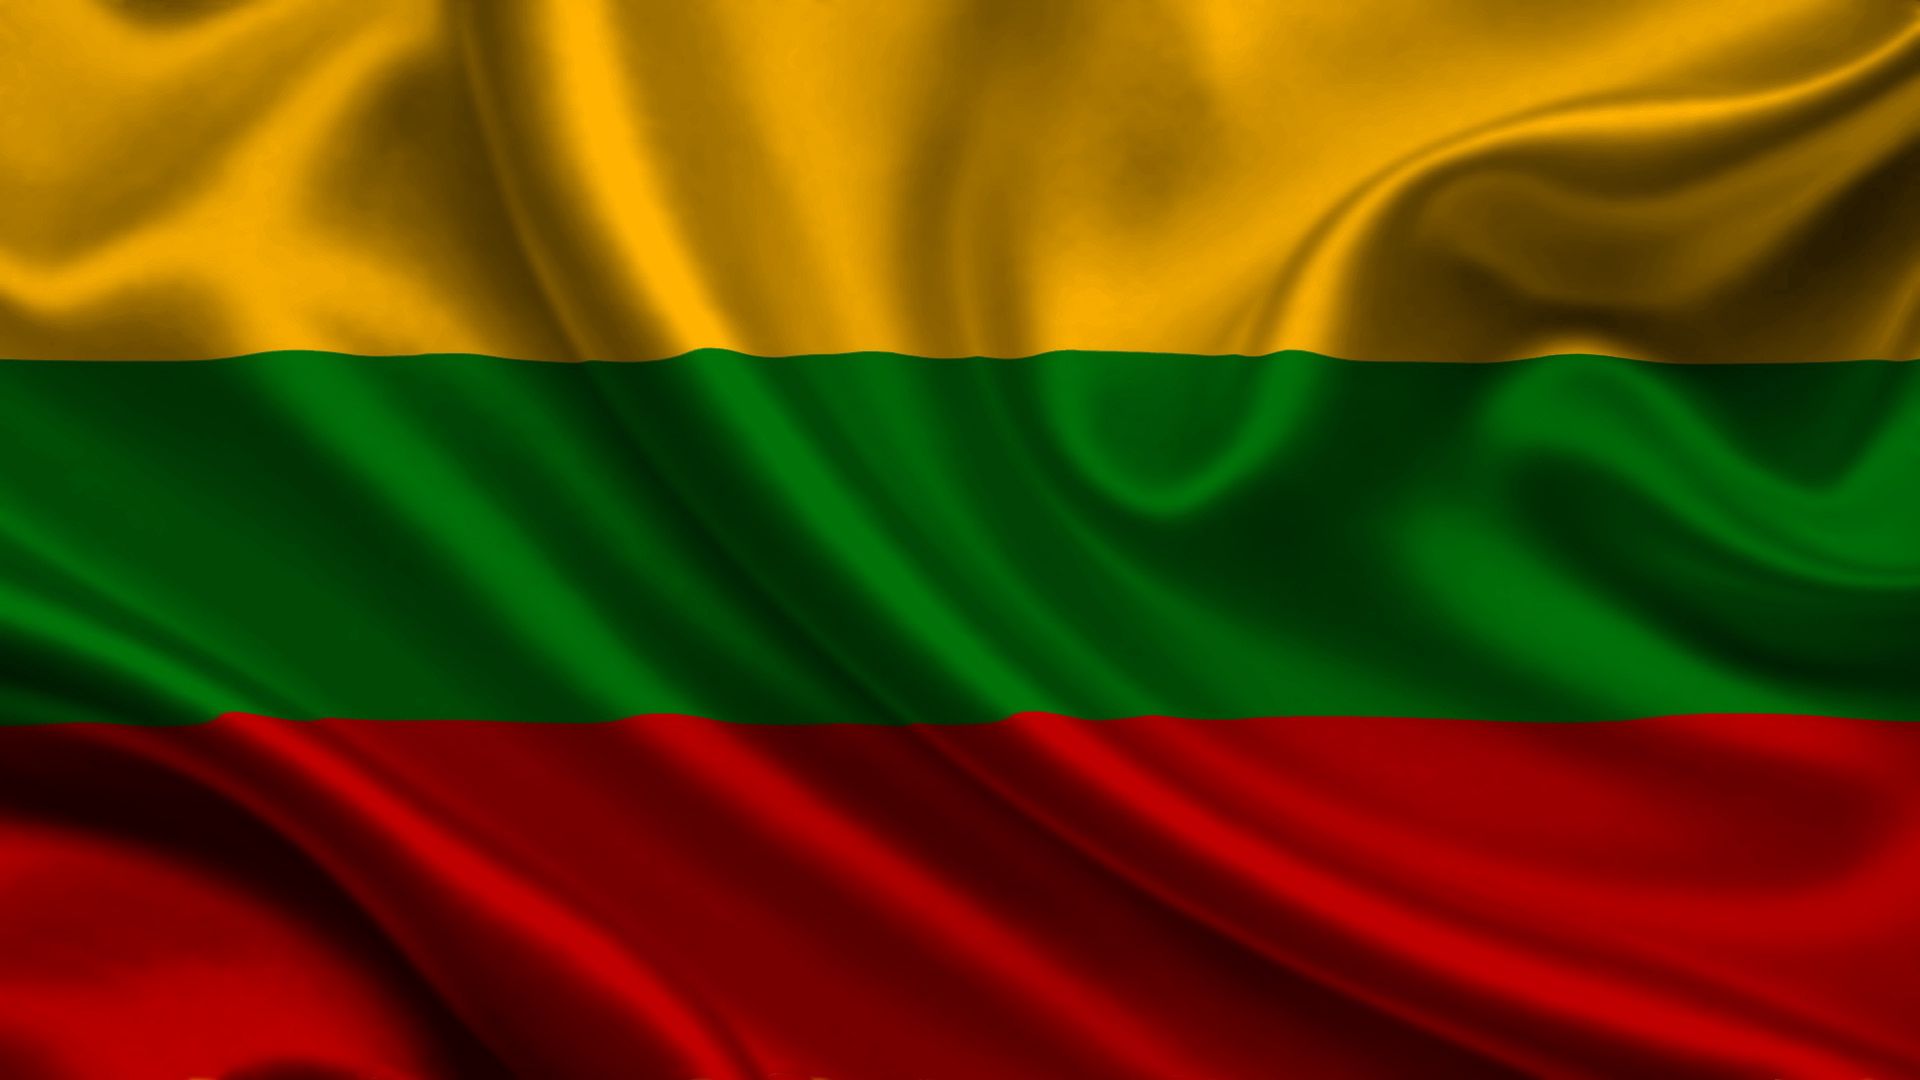 Скачать обои Литва на телефон бесплатно